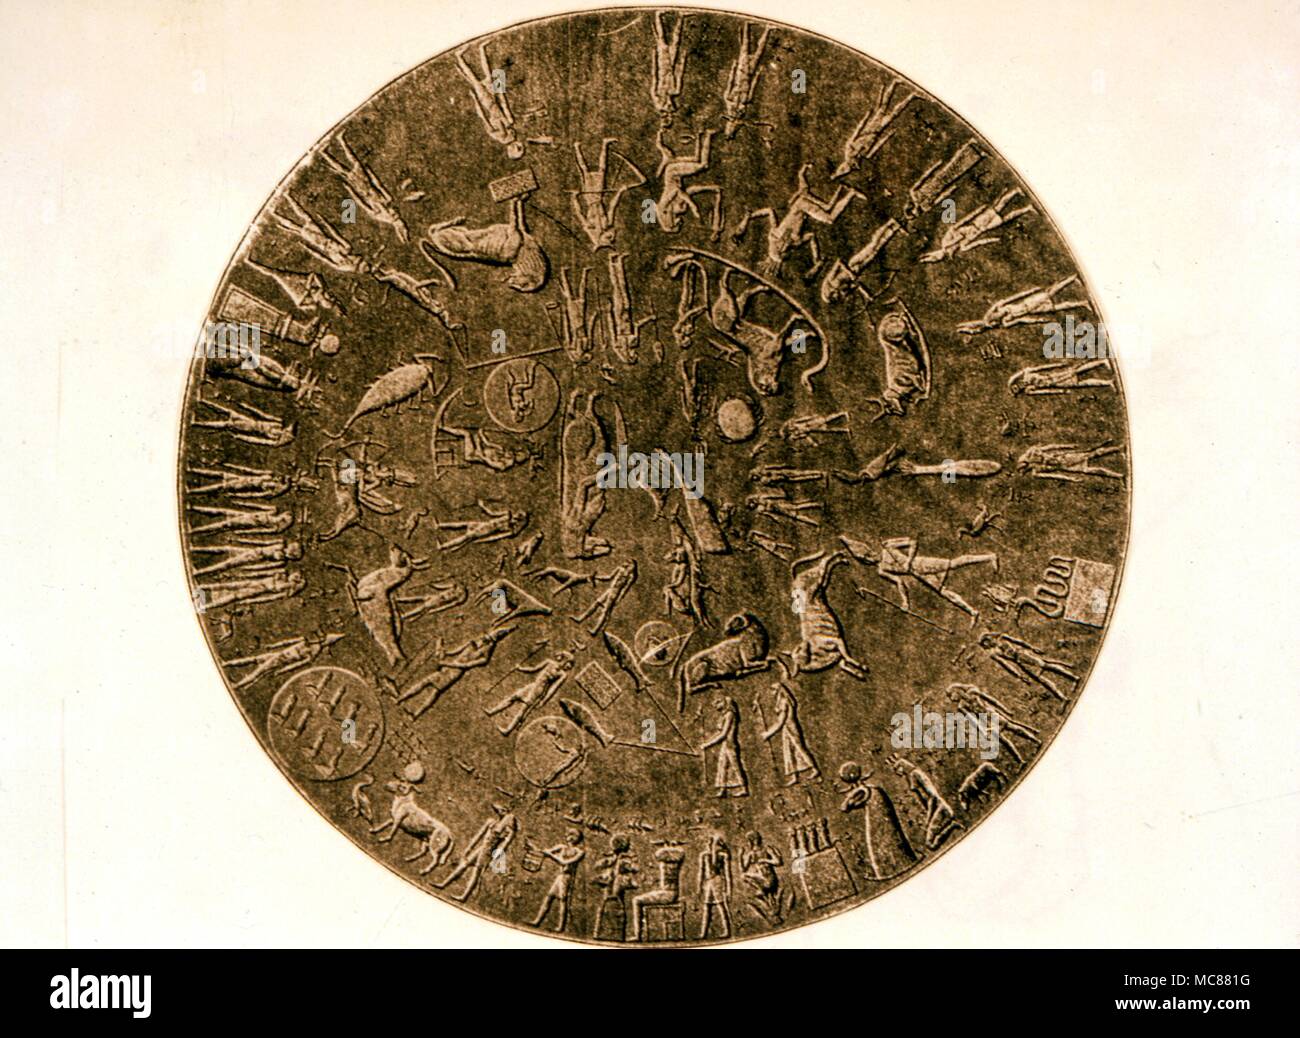 Bague romaine t52 Carte Constellation une gravure du xixe siècle de la toiture ou du zodiaque constellation carte dans le Temple d'Hathor Egypte Bague romaine t52 Banque D'Images